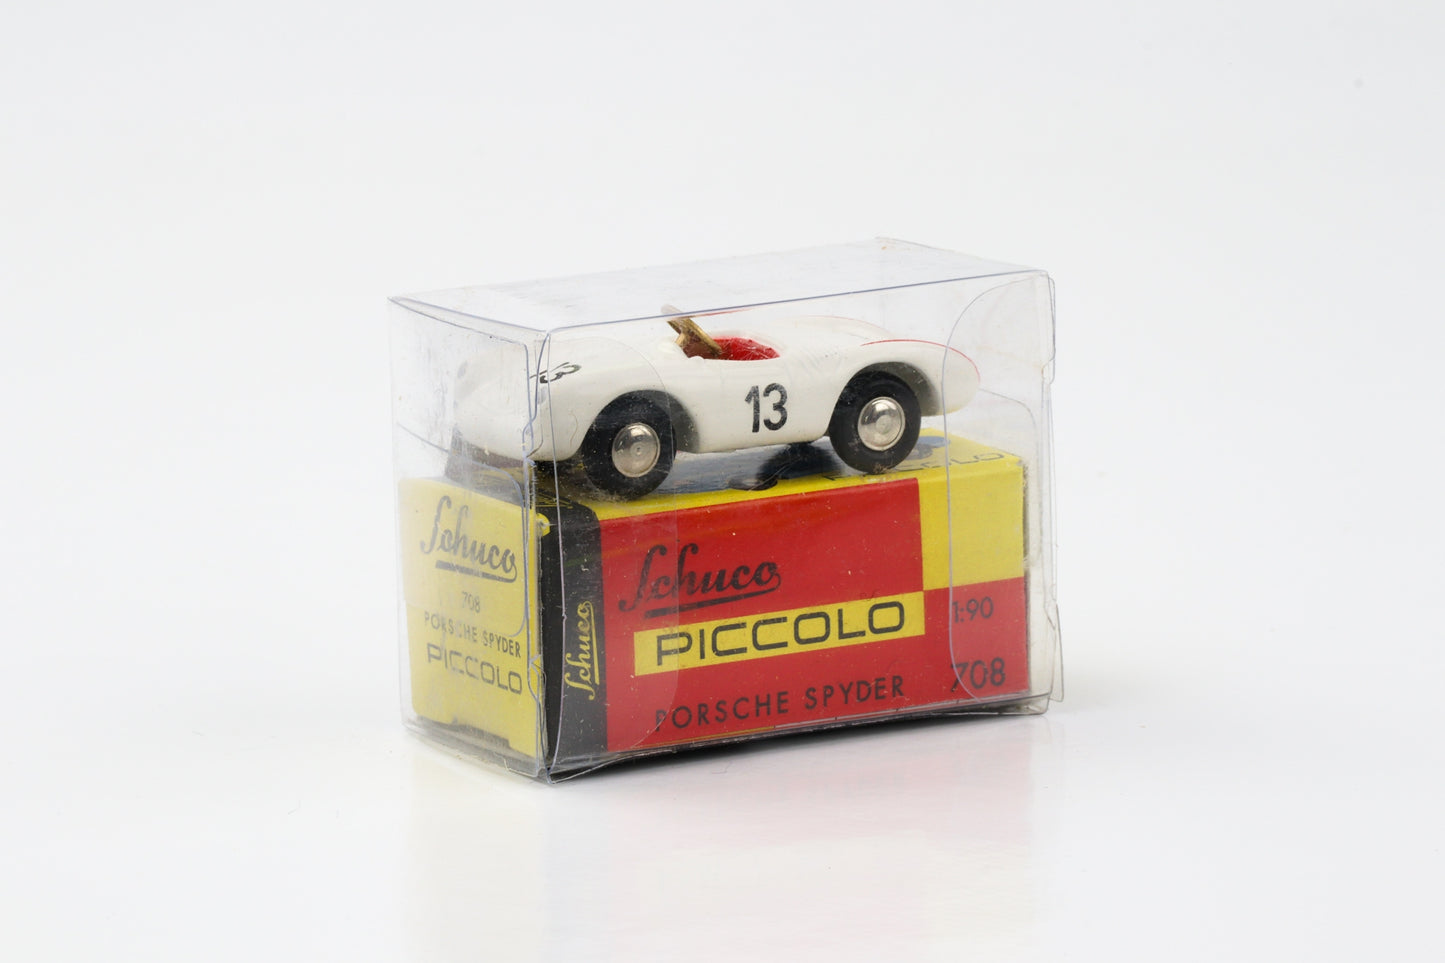 1:90 Porsche Spyder white #13 Techno Classica 1997 Schuco Piccolo 01271